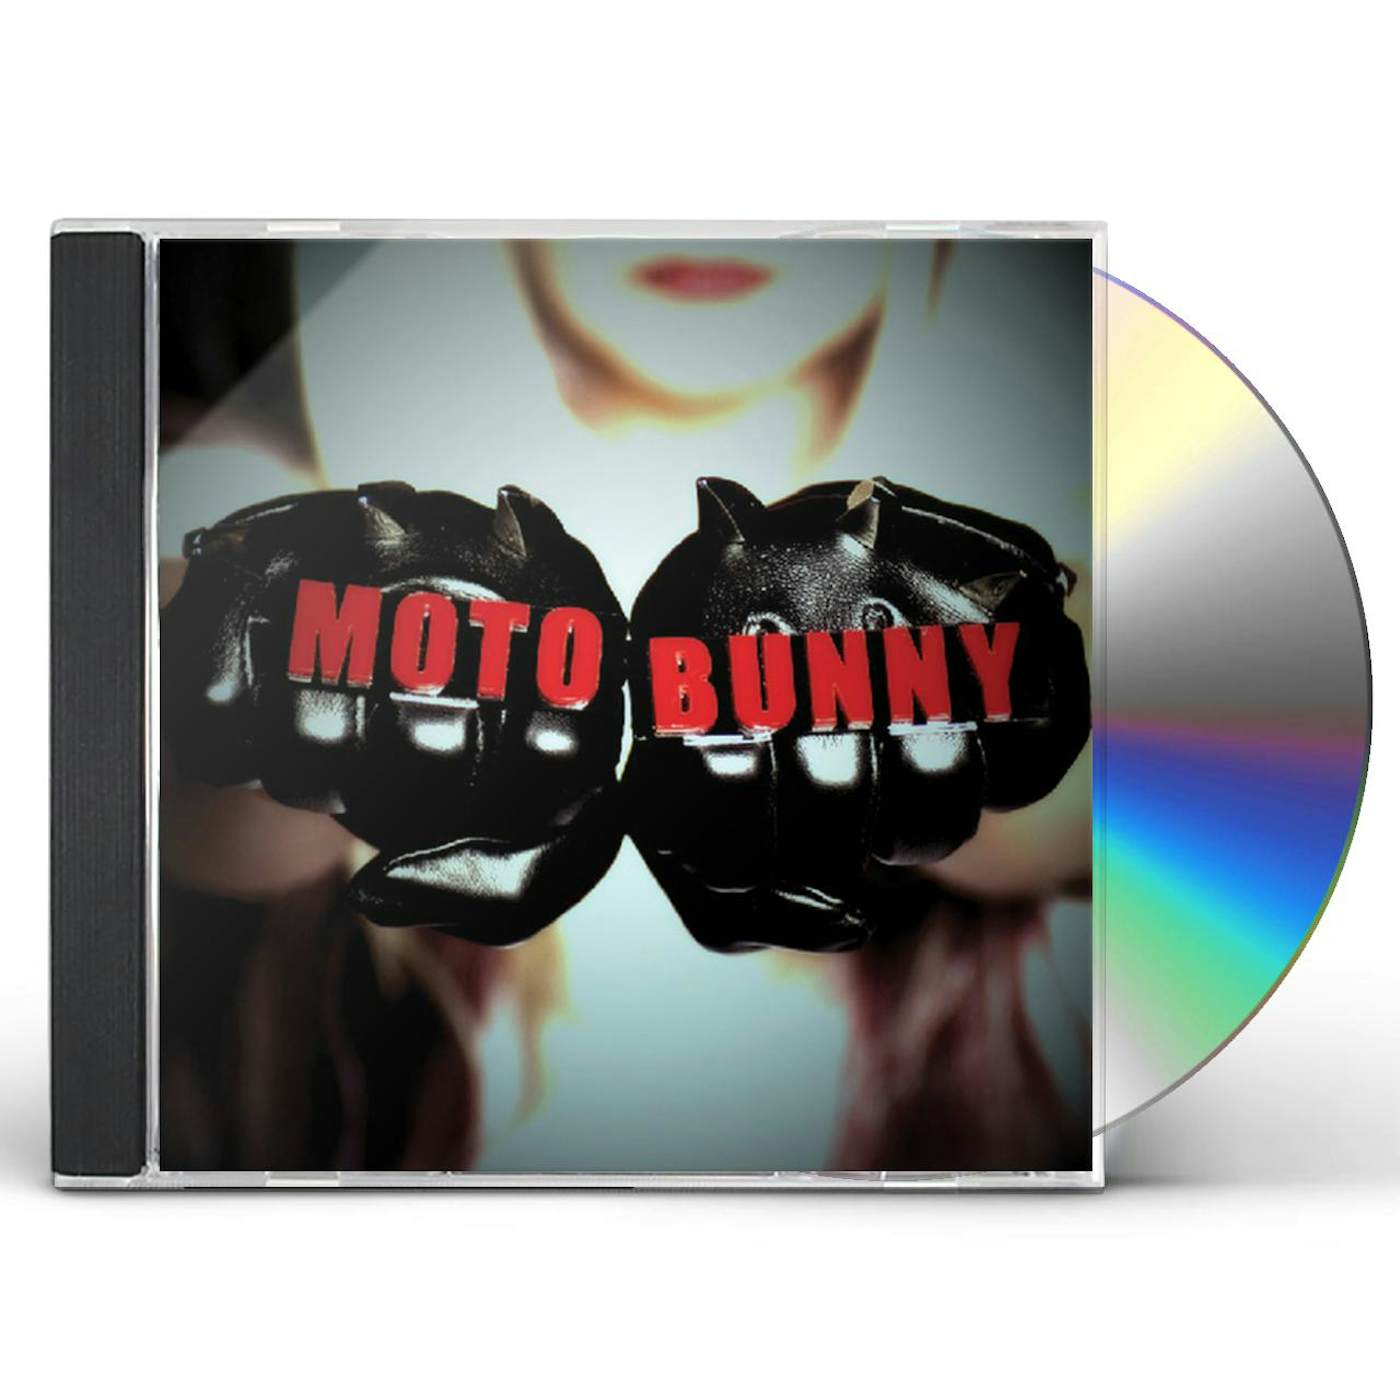 MOTOBUNNY CD